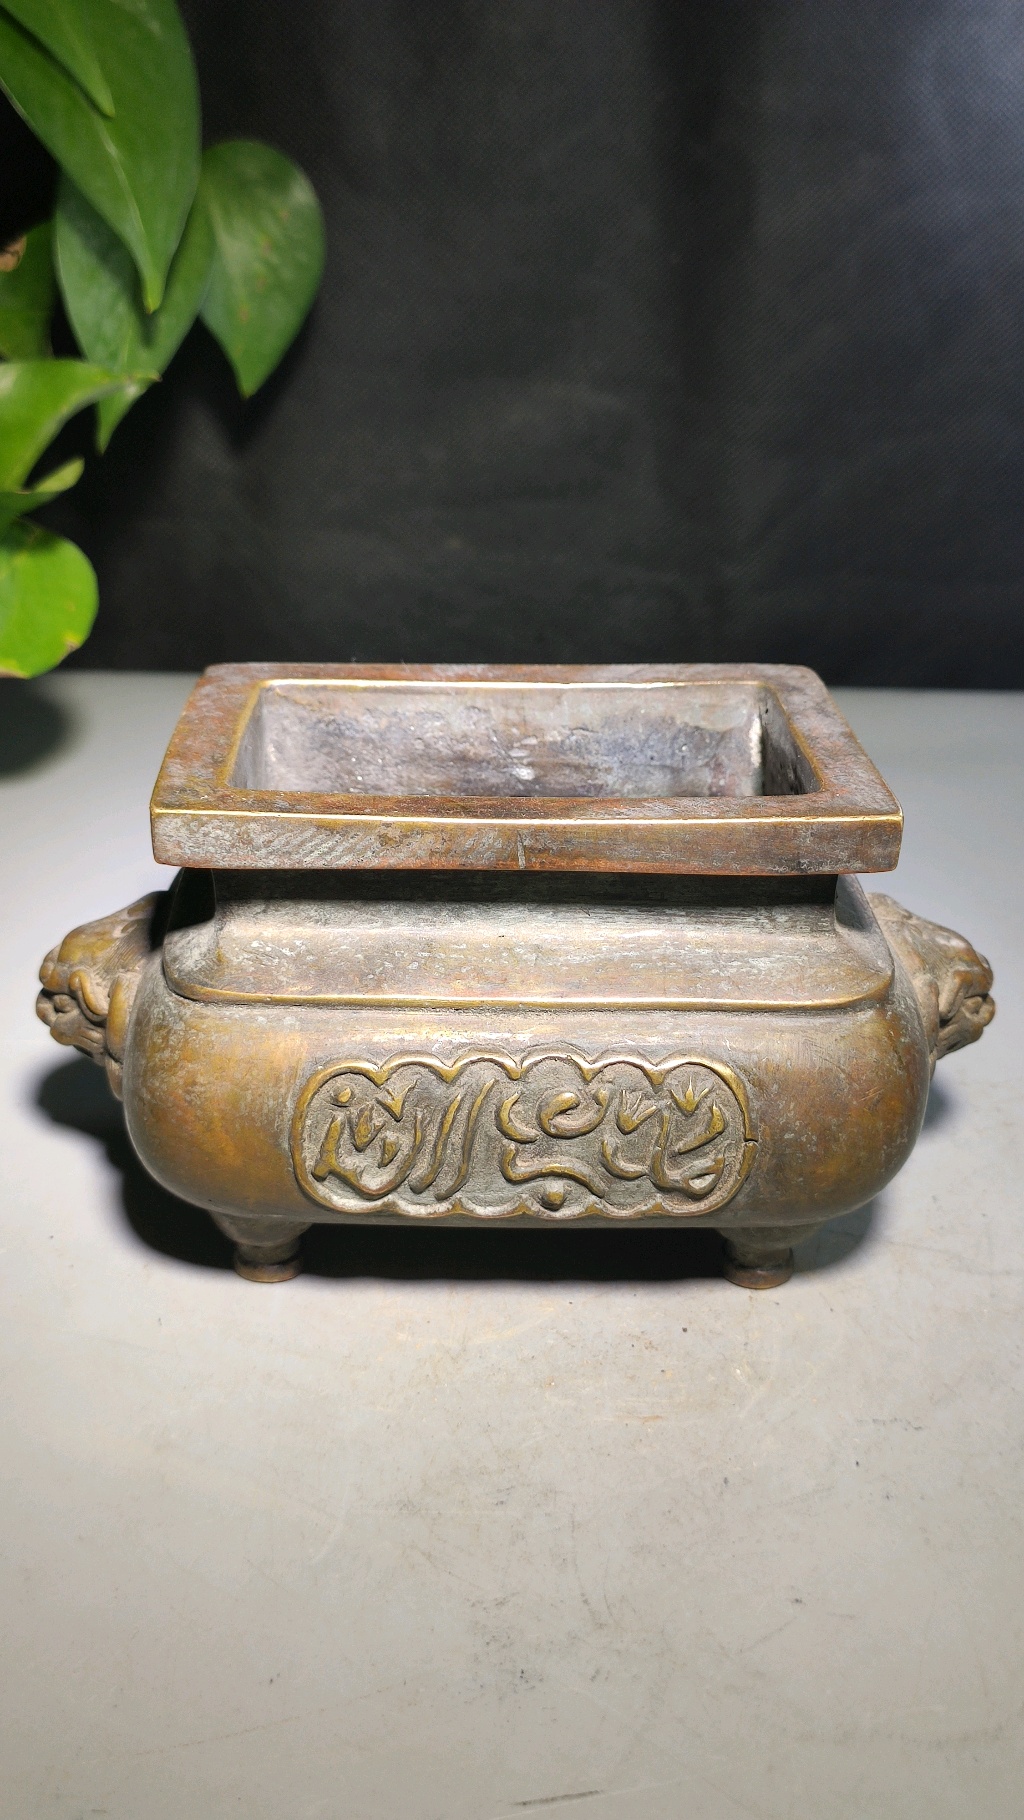 阿拉伯文铜香炉图片